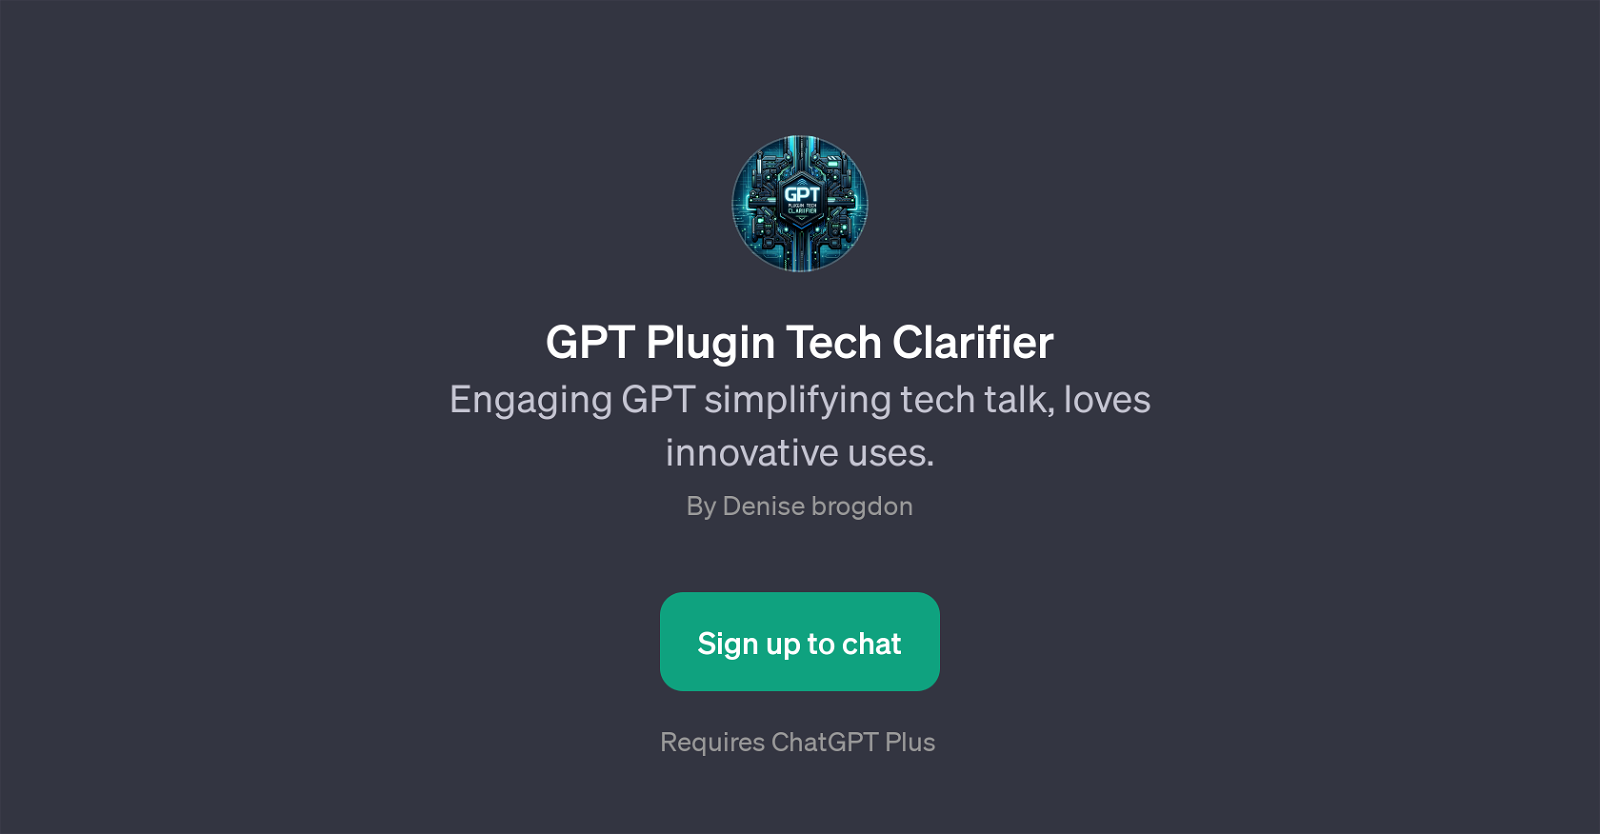 GPT Plugin Tech Clarifier website